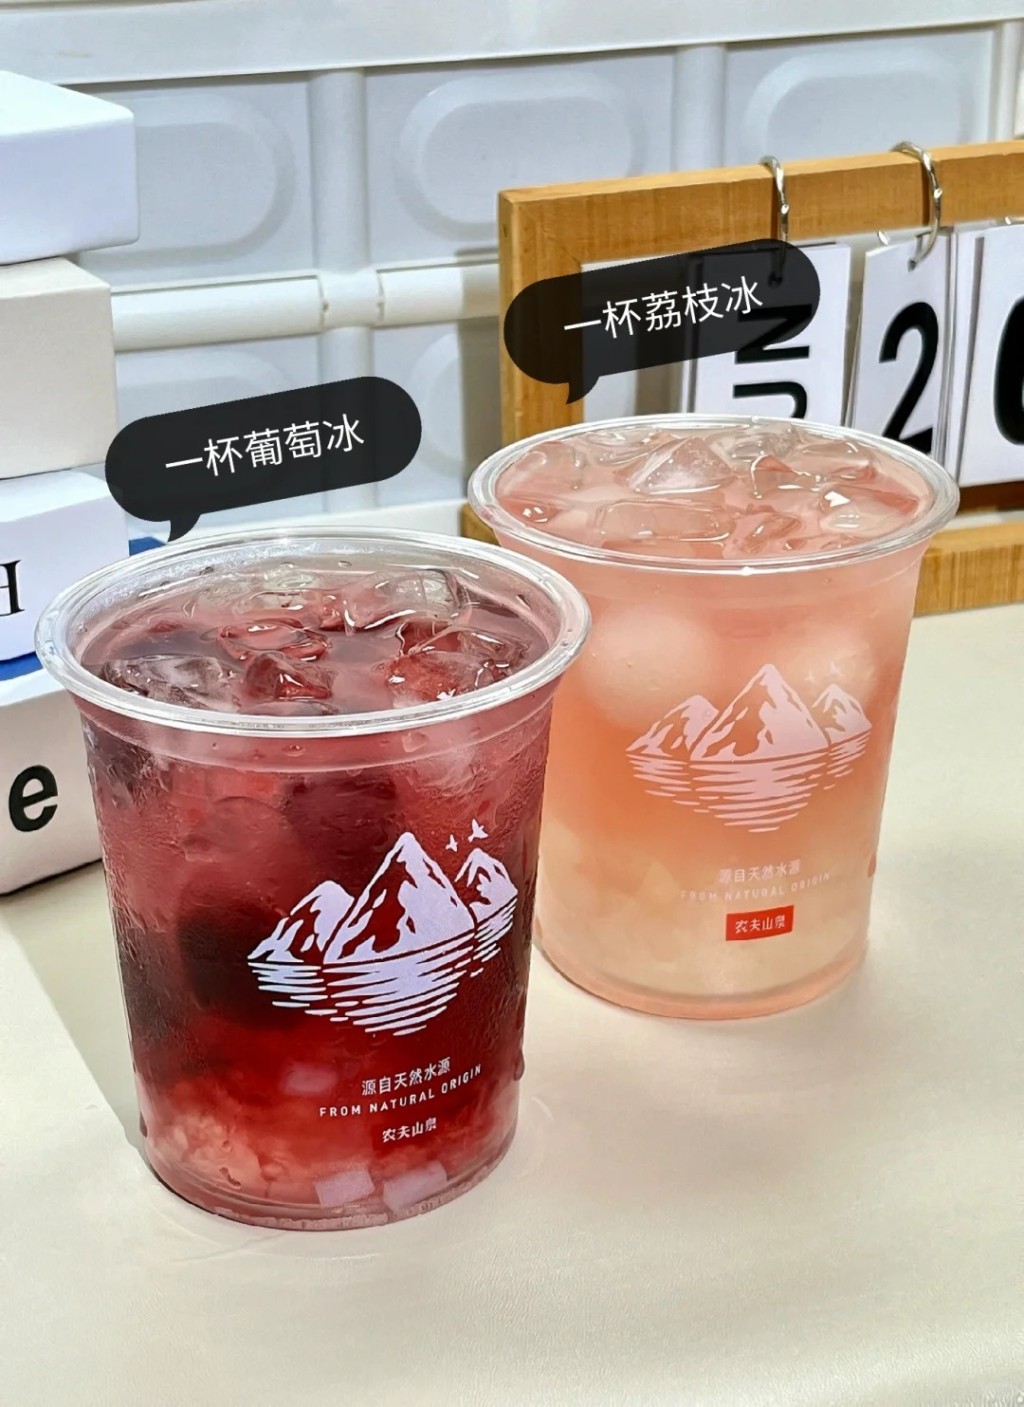 内地社交平台有许多网民分享用“冰杯”调制消暑饮品的方法。